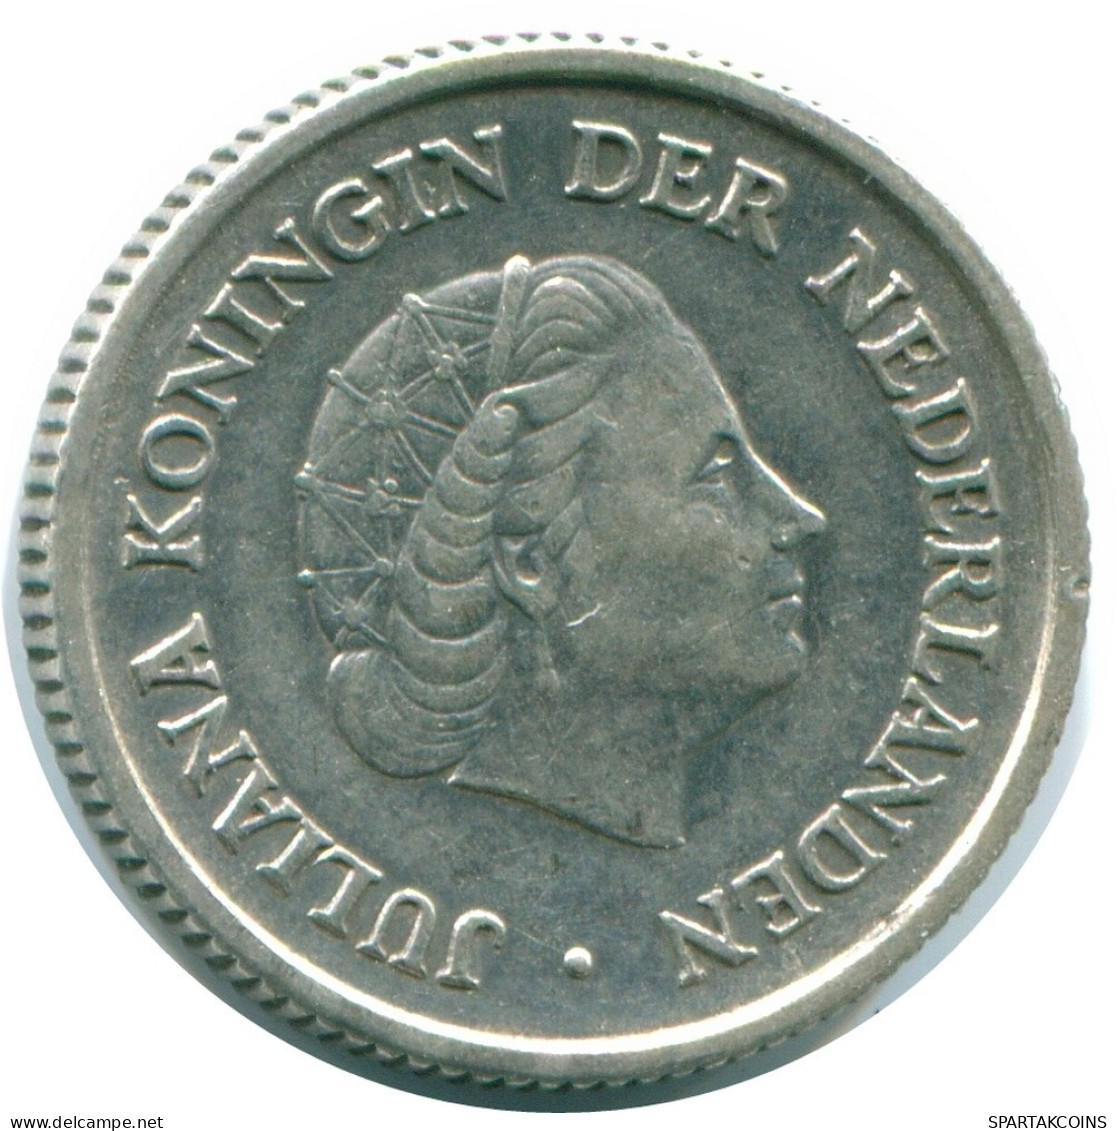 1/4 GULDEN 1957 NIEDERLÄNDISCHE ANTILLEN SILBER Koloniale Münze #NL10981.4.D.A - Antilles Néerlandaises